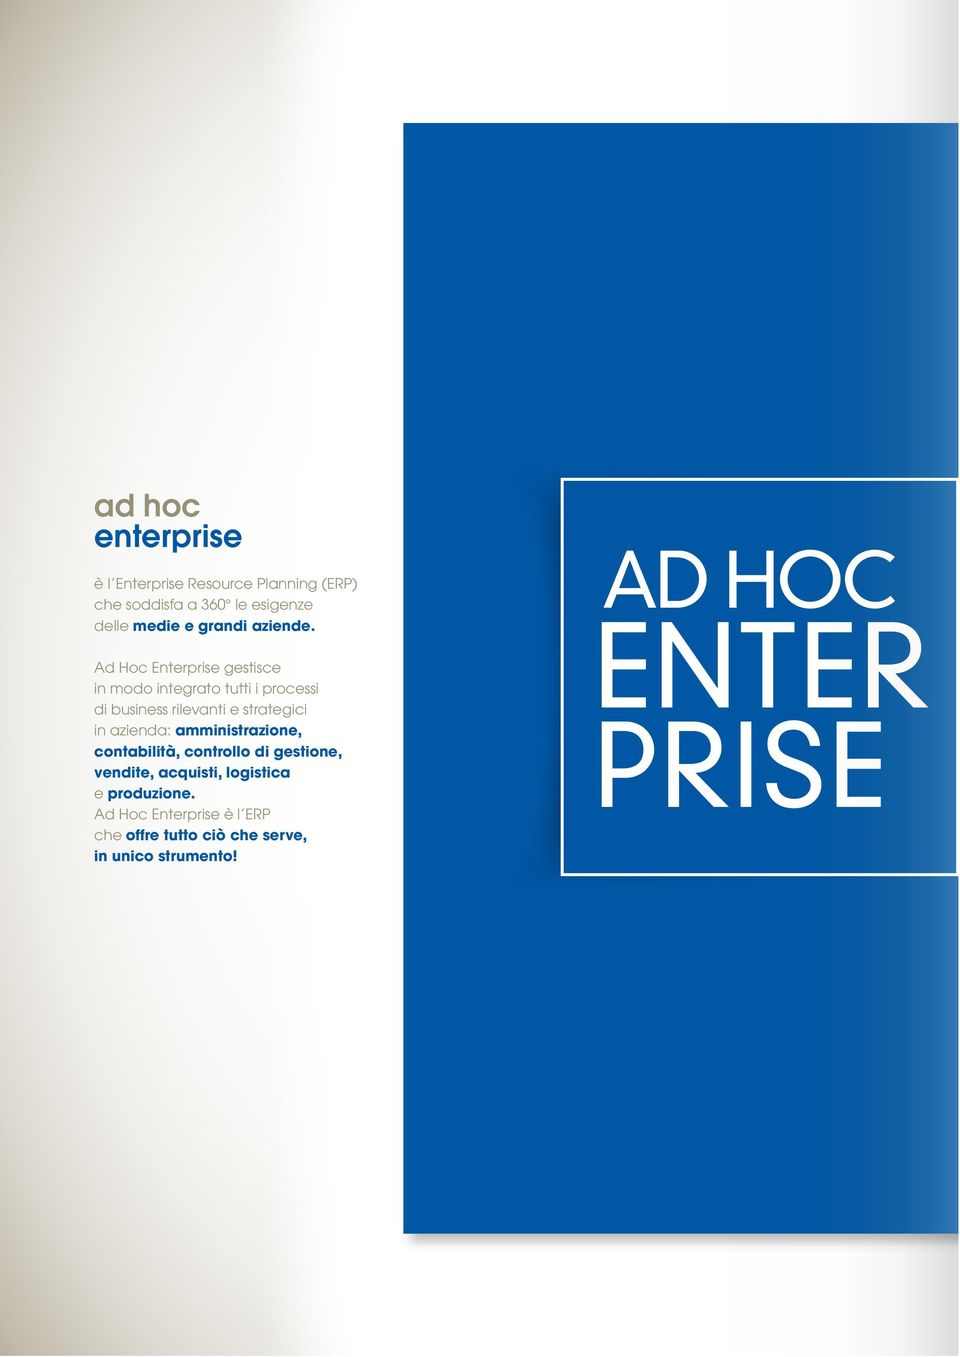 Ad Hoc Enterprise gestisce in modo integrato tutti i processi di business rilevanti e strategici in